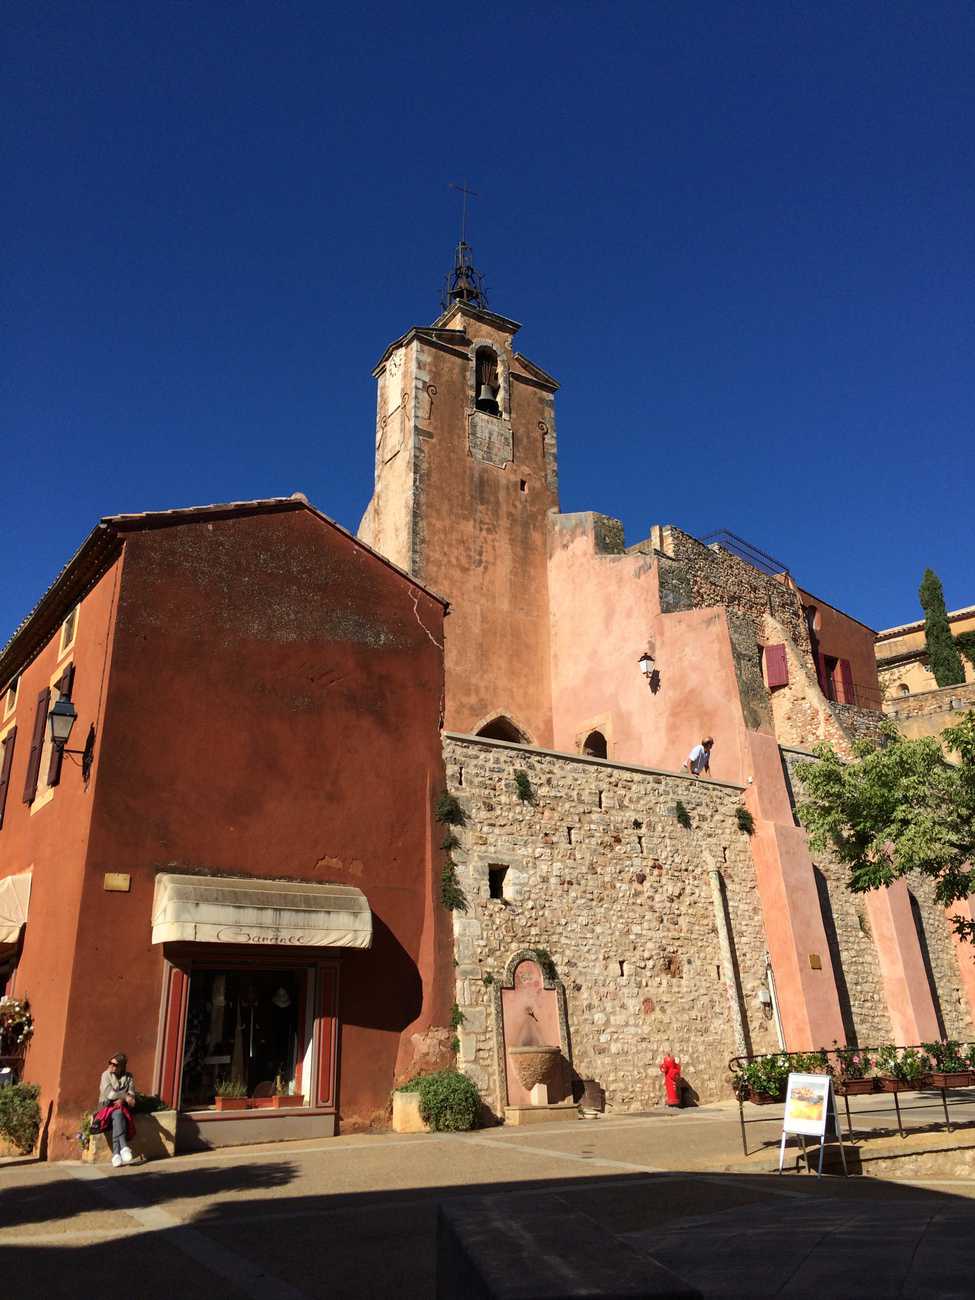 Roussillon - church